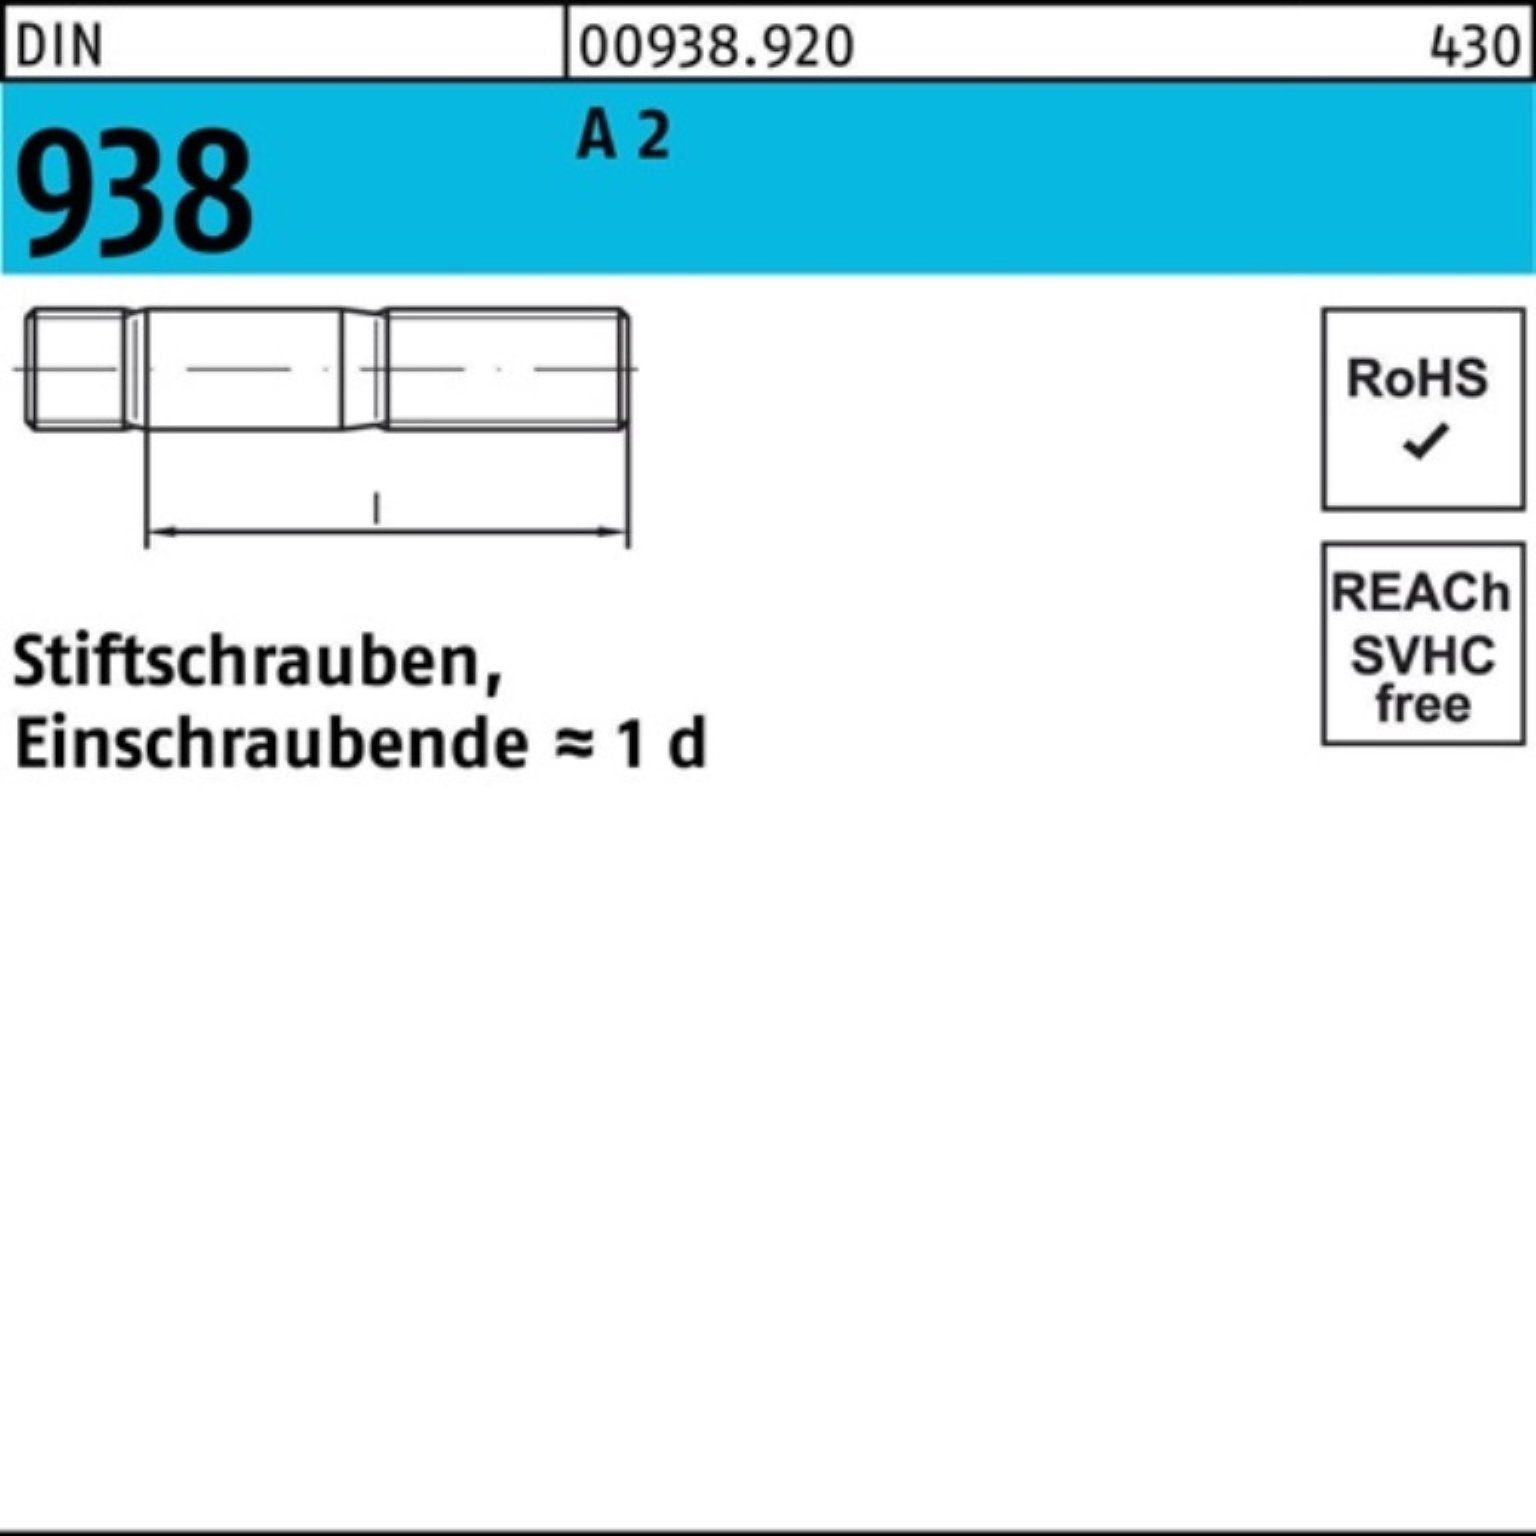 Reyher Stiftschraube M6x Stiftschraube 100er DIN 25 A 2 Pack 2 Stif DIN 16 A 938 938 Stück